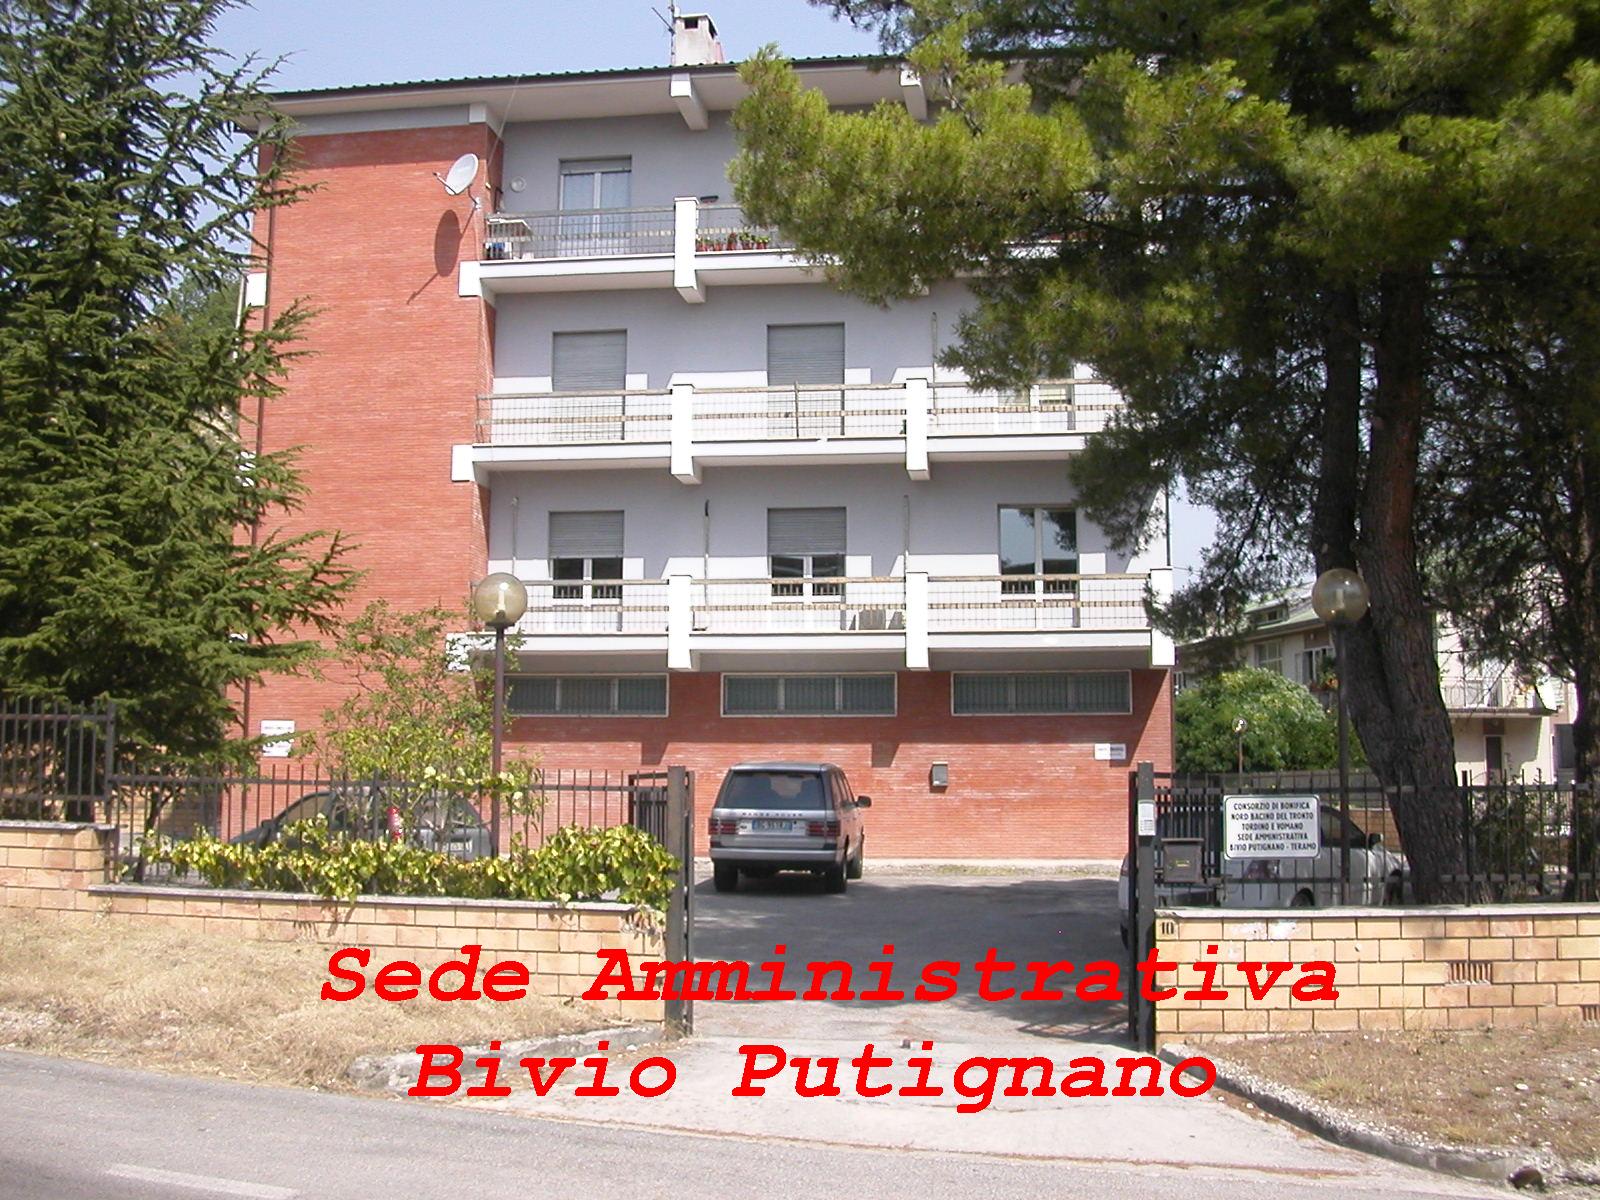 Bivio Putignano